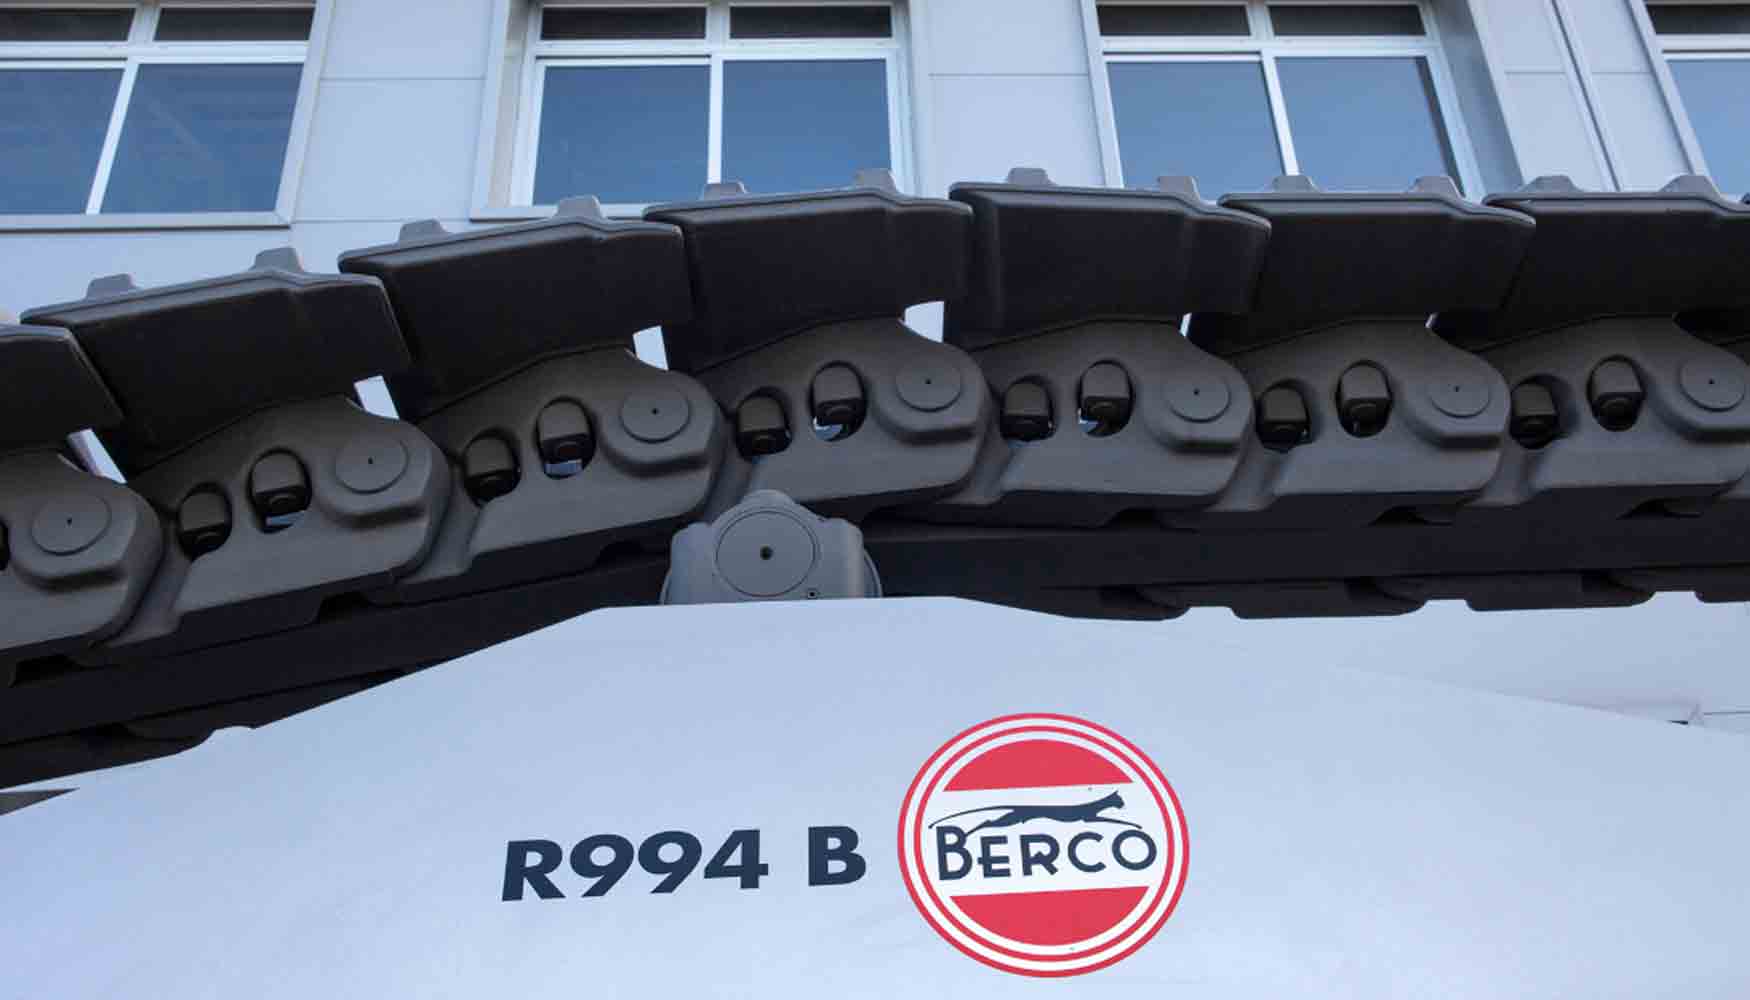 Berco quiere convertir su planta de Copparo en un ejemplo de sostenibilidad